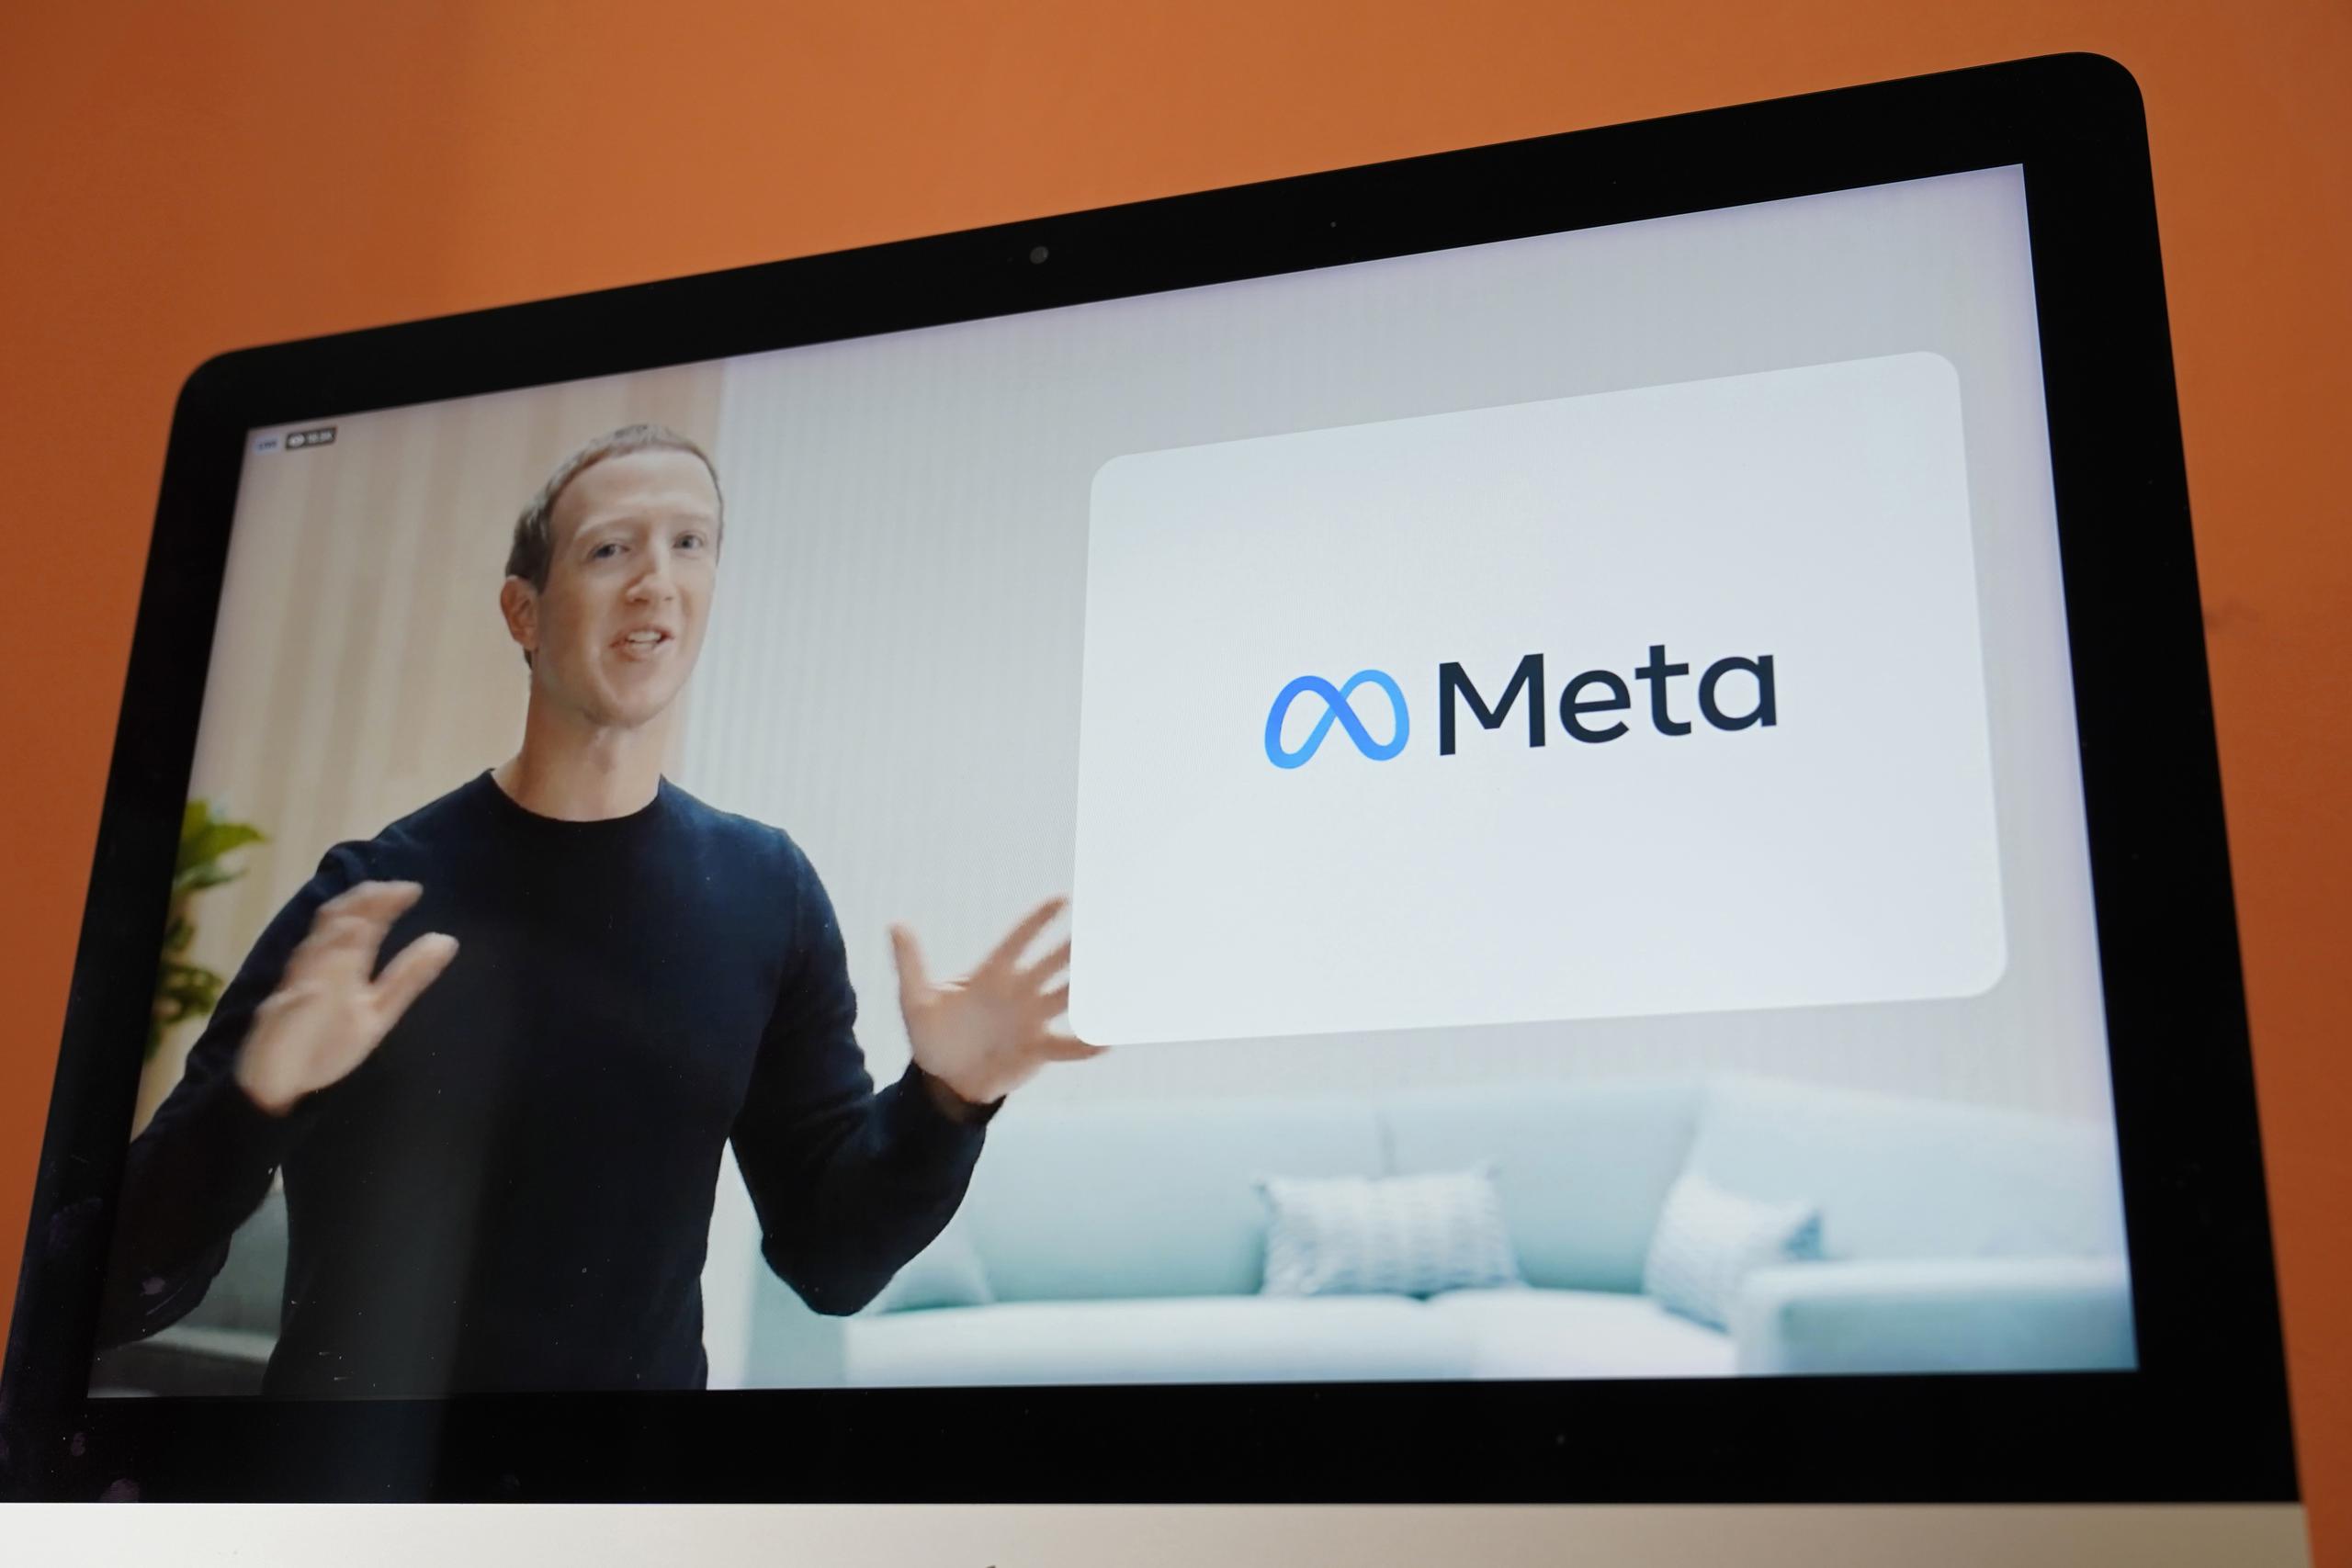 Visto en la pantalla de un dispositivo en Sausalito, California, el CEO de Facebook, Mark Zuckerberg, anuncia el nuevo nombre de la compañía, Meta, durante un evento virtual el jueves 28 de octubre de 2021. (Foto AP/Eric Risberg, Archivo)